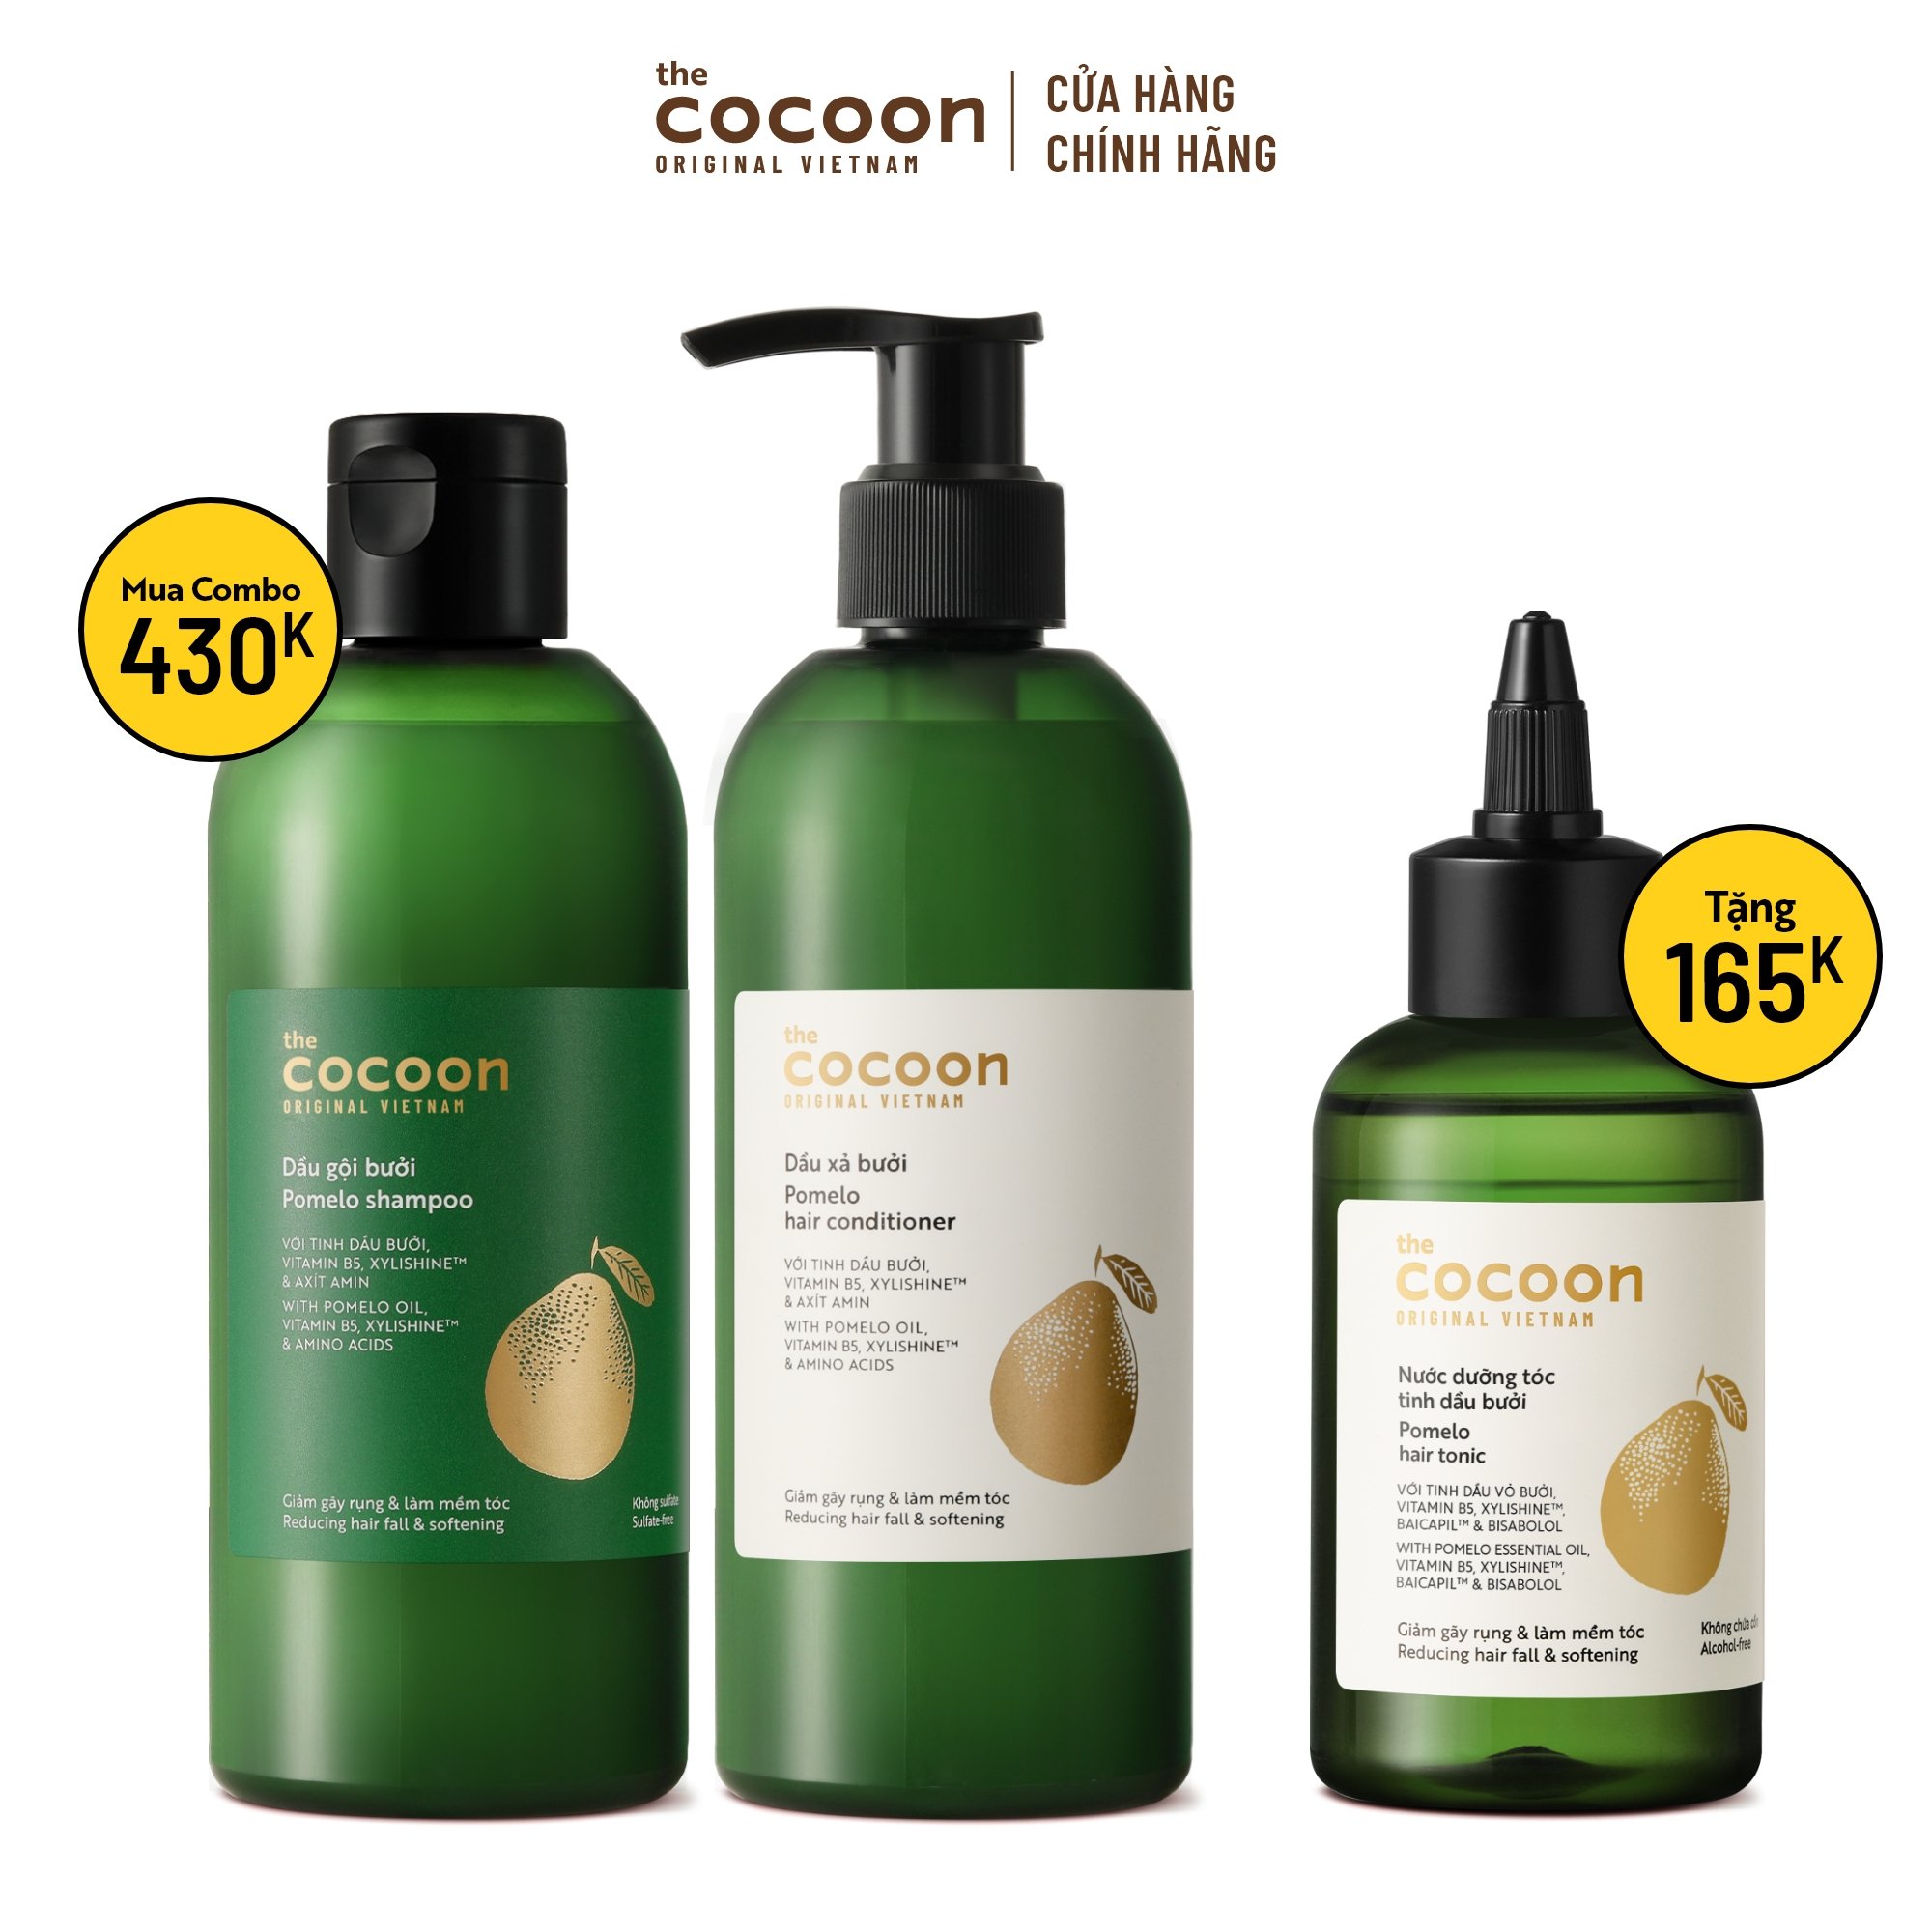 SPECIAL COMBO gội xả bưởi không sulfate giảm gãy rụng tóc Cocoon (tặng 1 nước dưỡng tóc tinh dầu bưởi Cocoon 140ml)